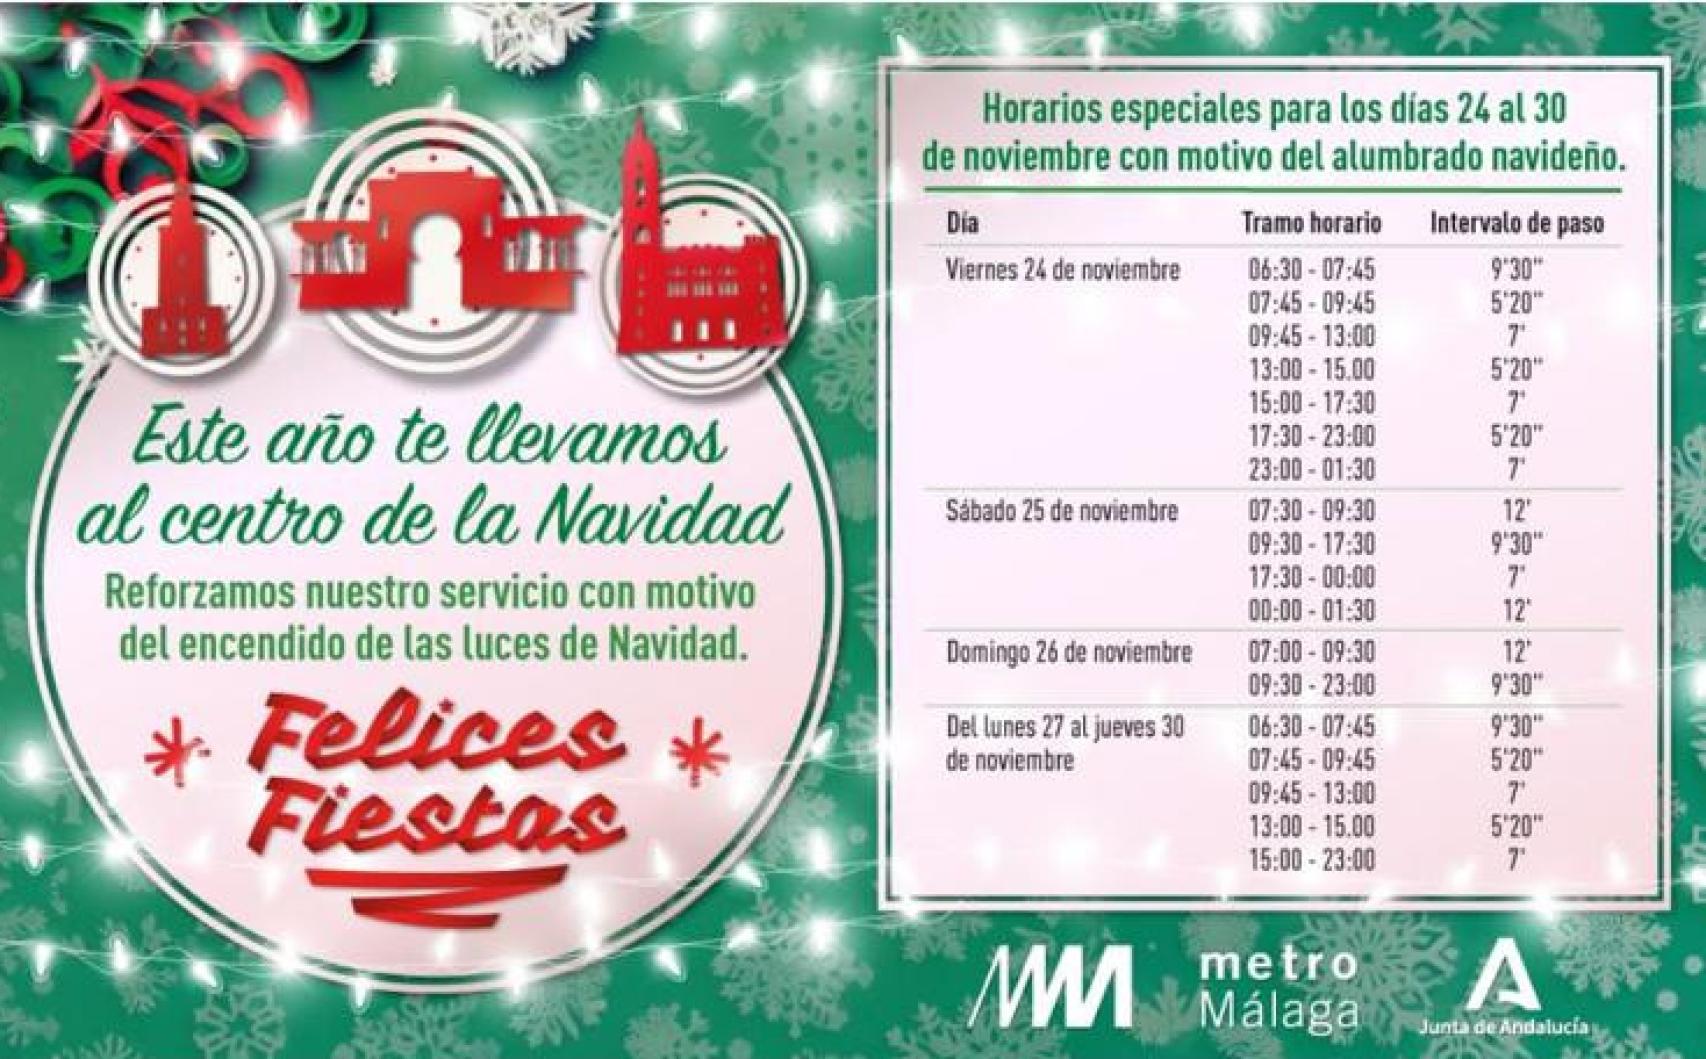 Horarios del Metro de Málaga del 24 al 30 noviembre.